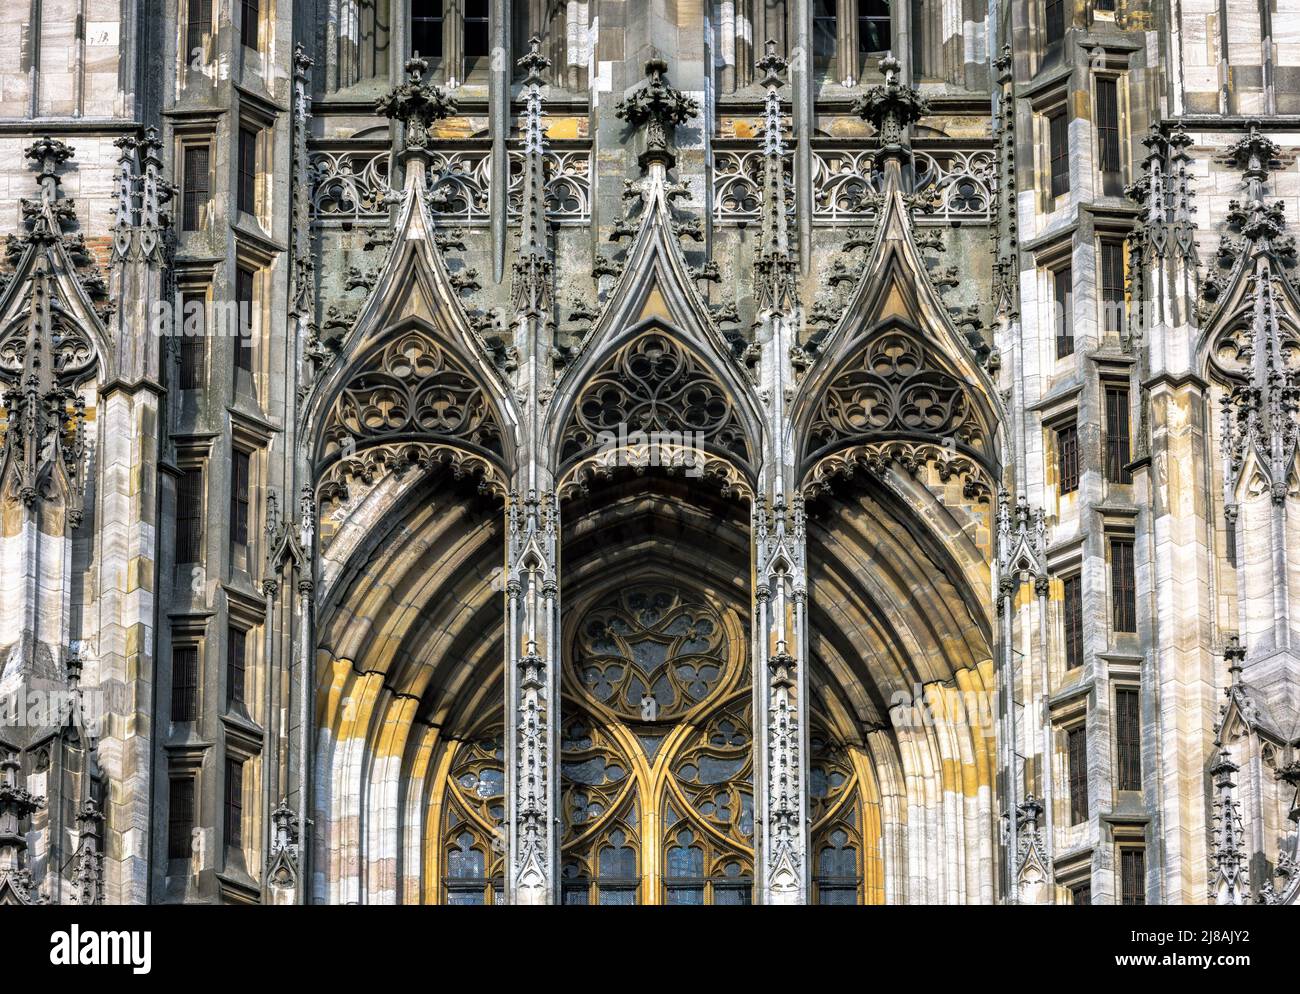 Primo piano della cattedrale di Ulm, Germania, Europa. E' il punto di riferimento principale della citta' di Ulm. Vista frontale della facciata ornata della vecchia chiesa, gotico rilievo modello medievale Foto Stock